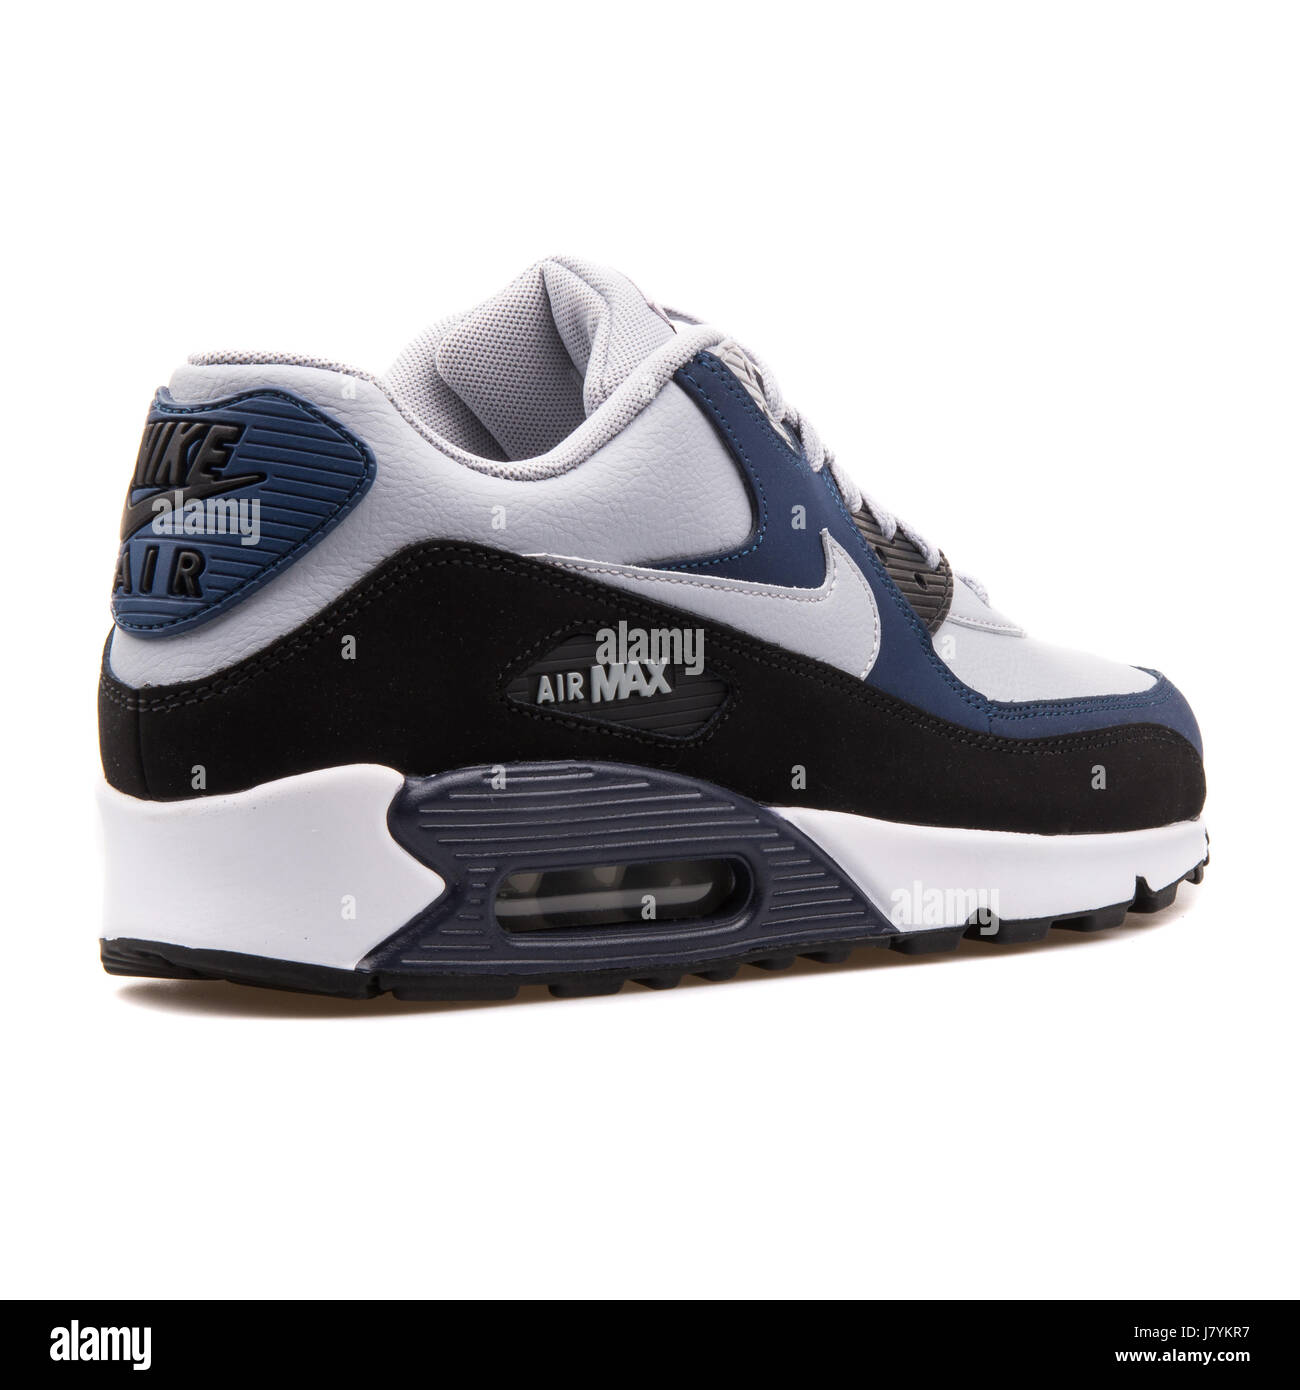 Nike Air Max 90 Gris azul marino hombres zapatillas deportivas - 652980-011 de stock - Alamy